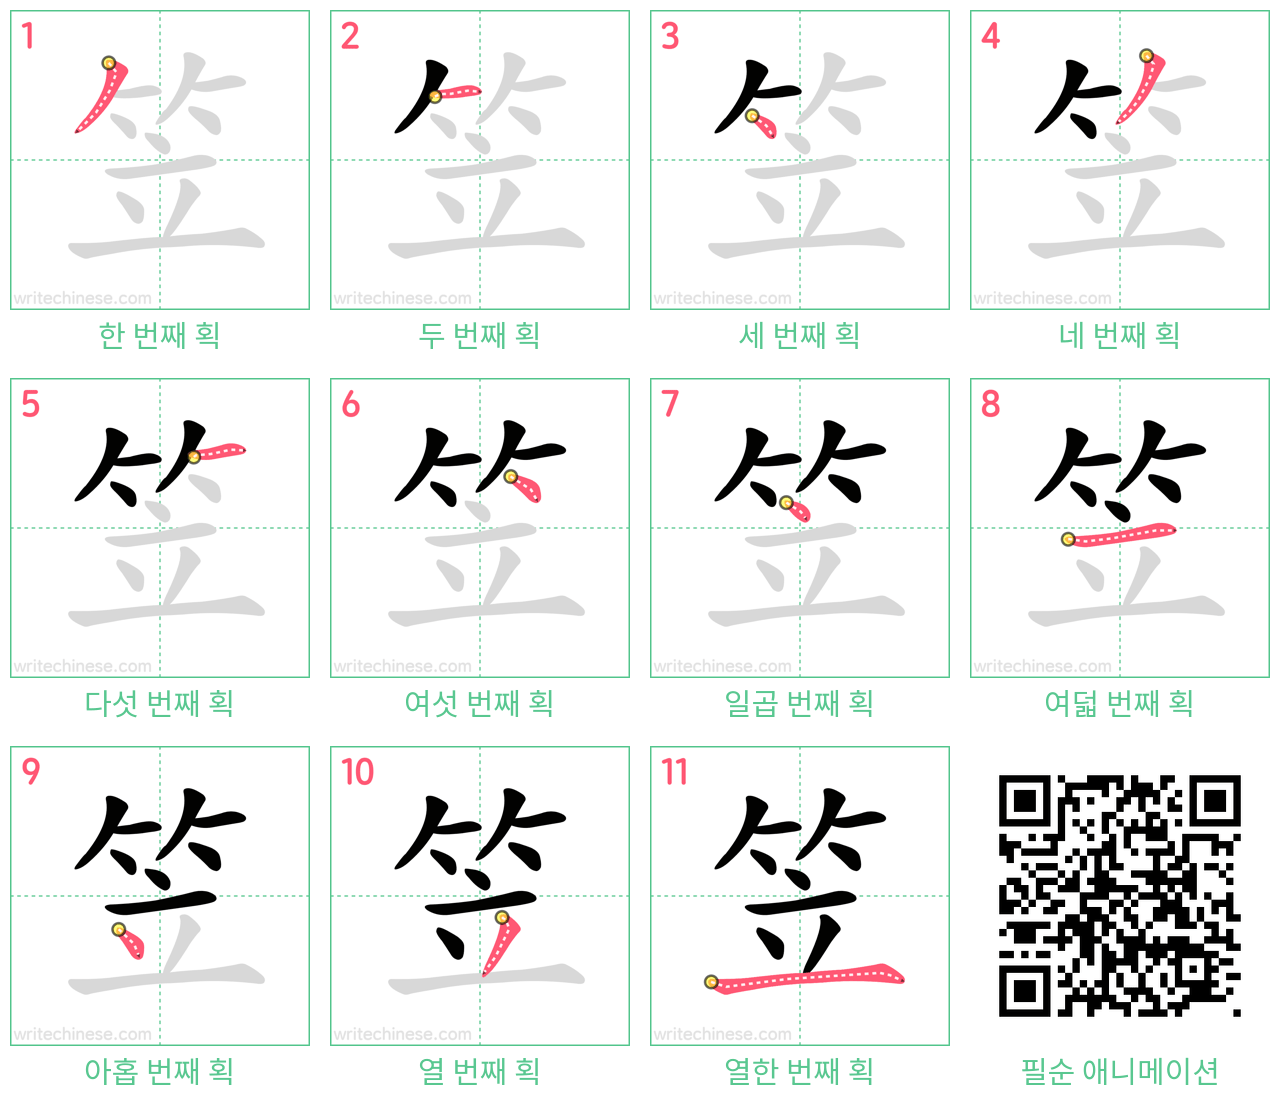 笠 step-by-step stroke order diagrams